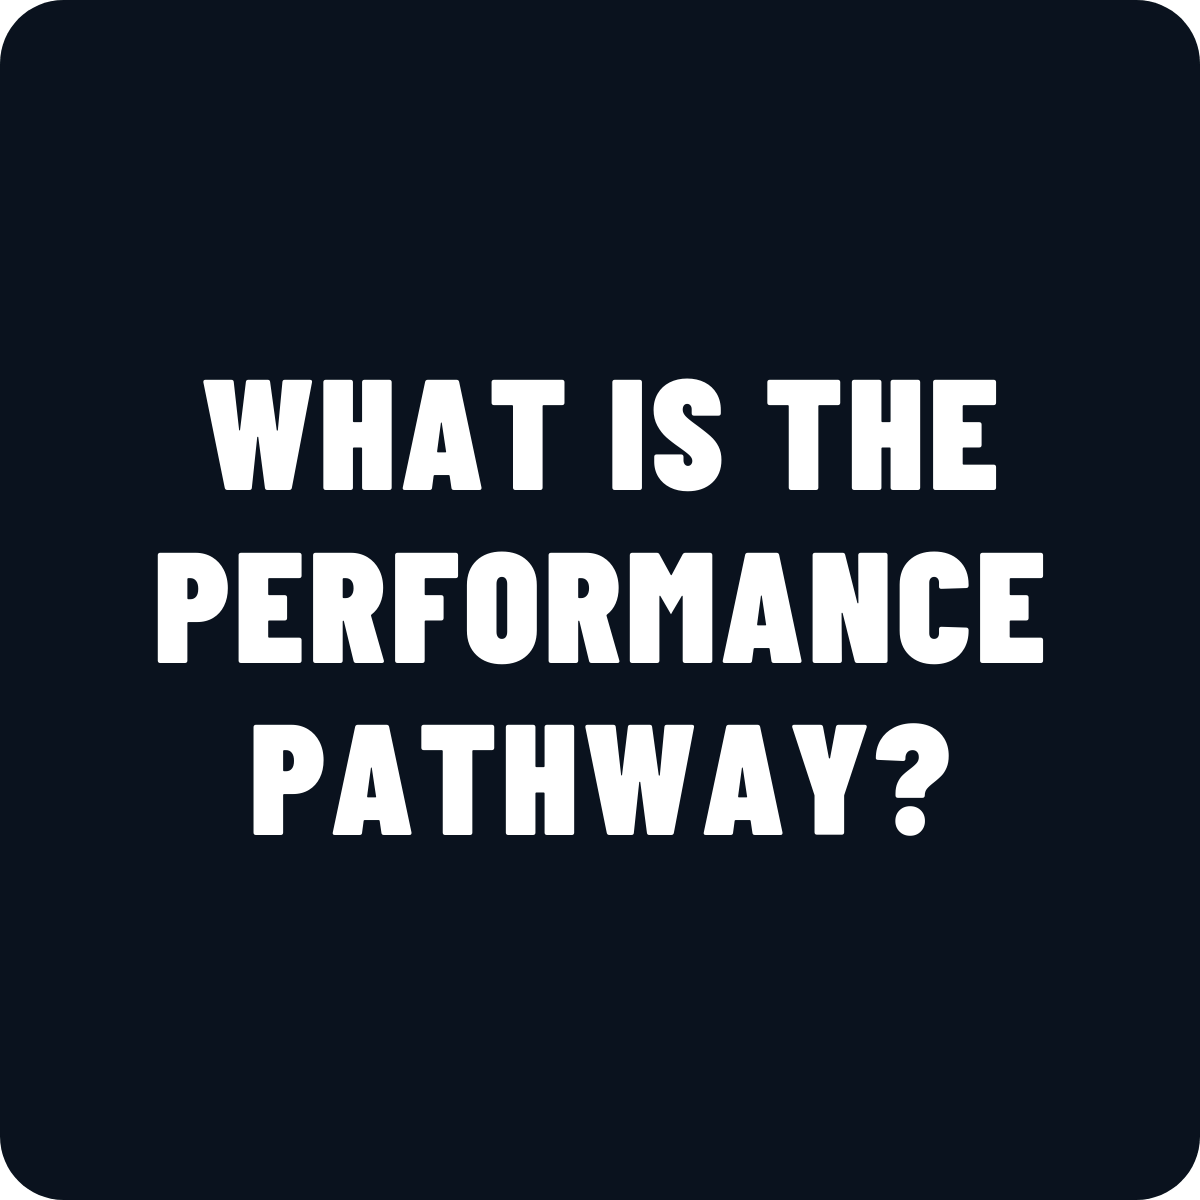 PerformancePathway